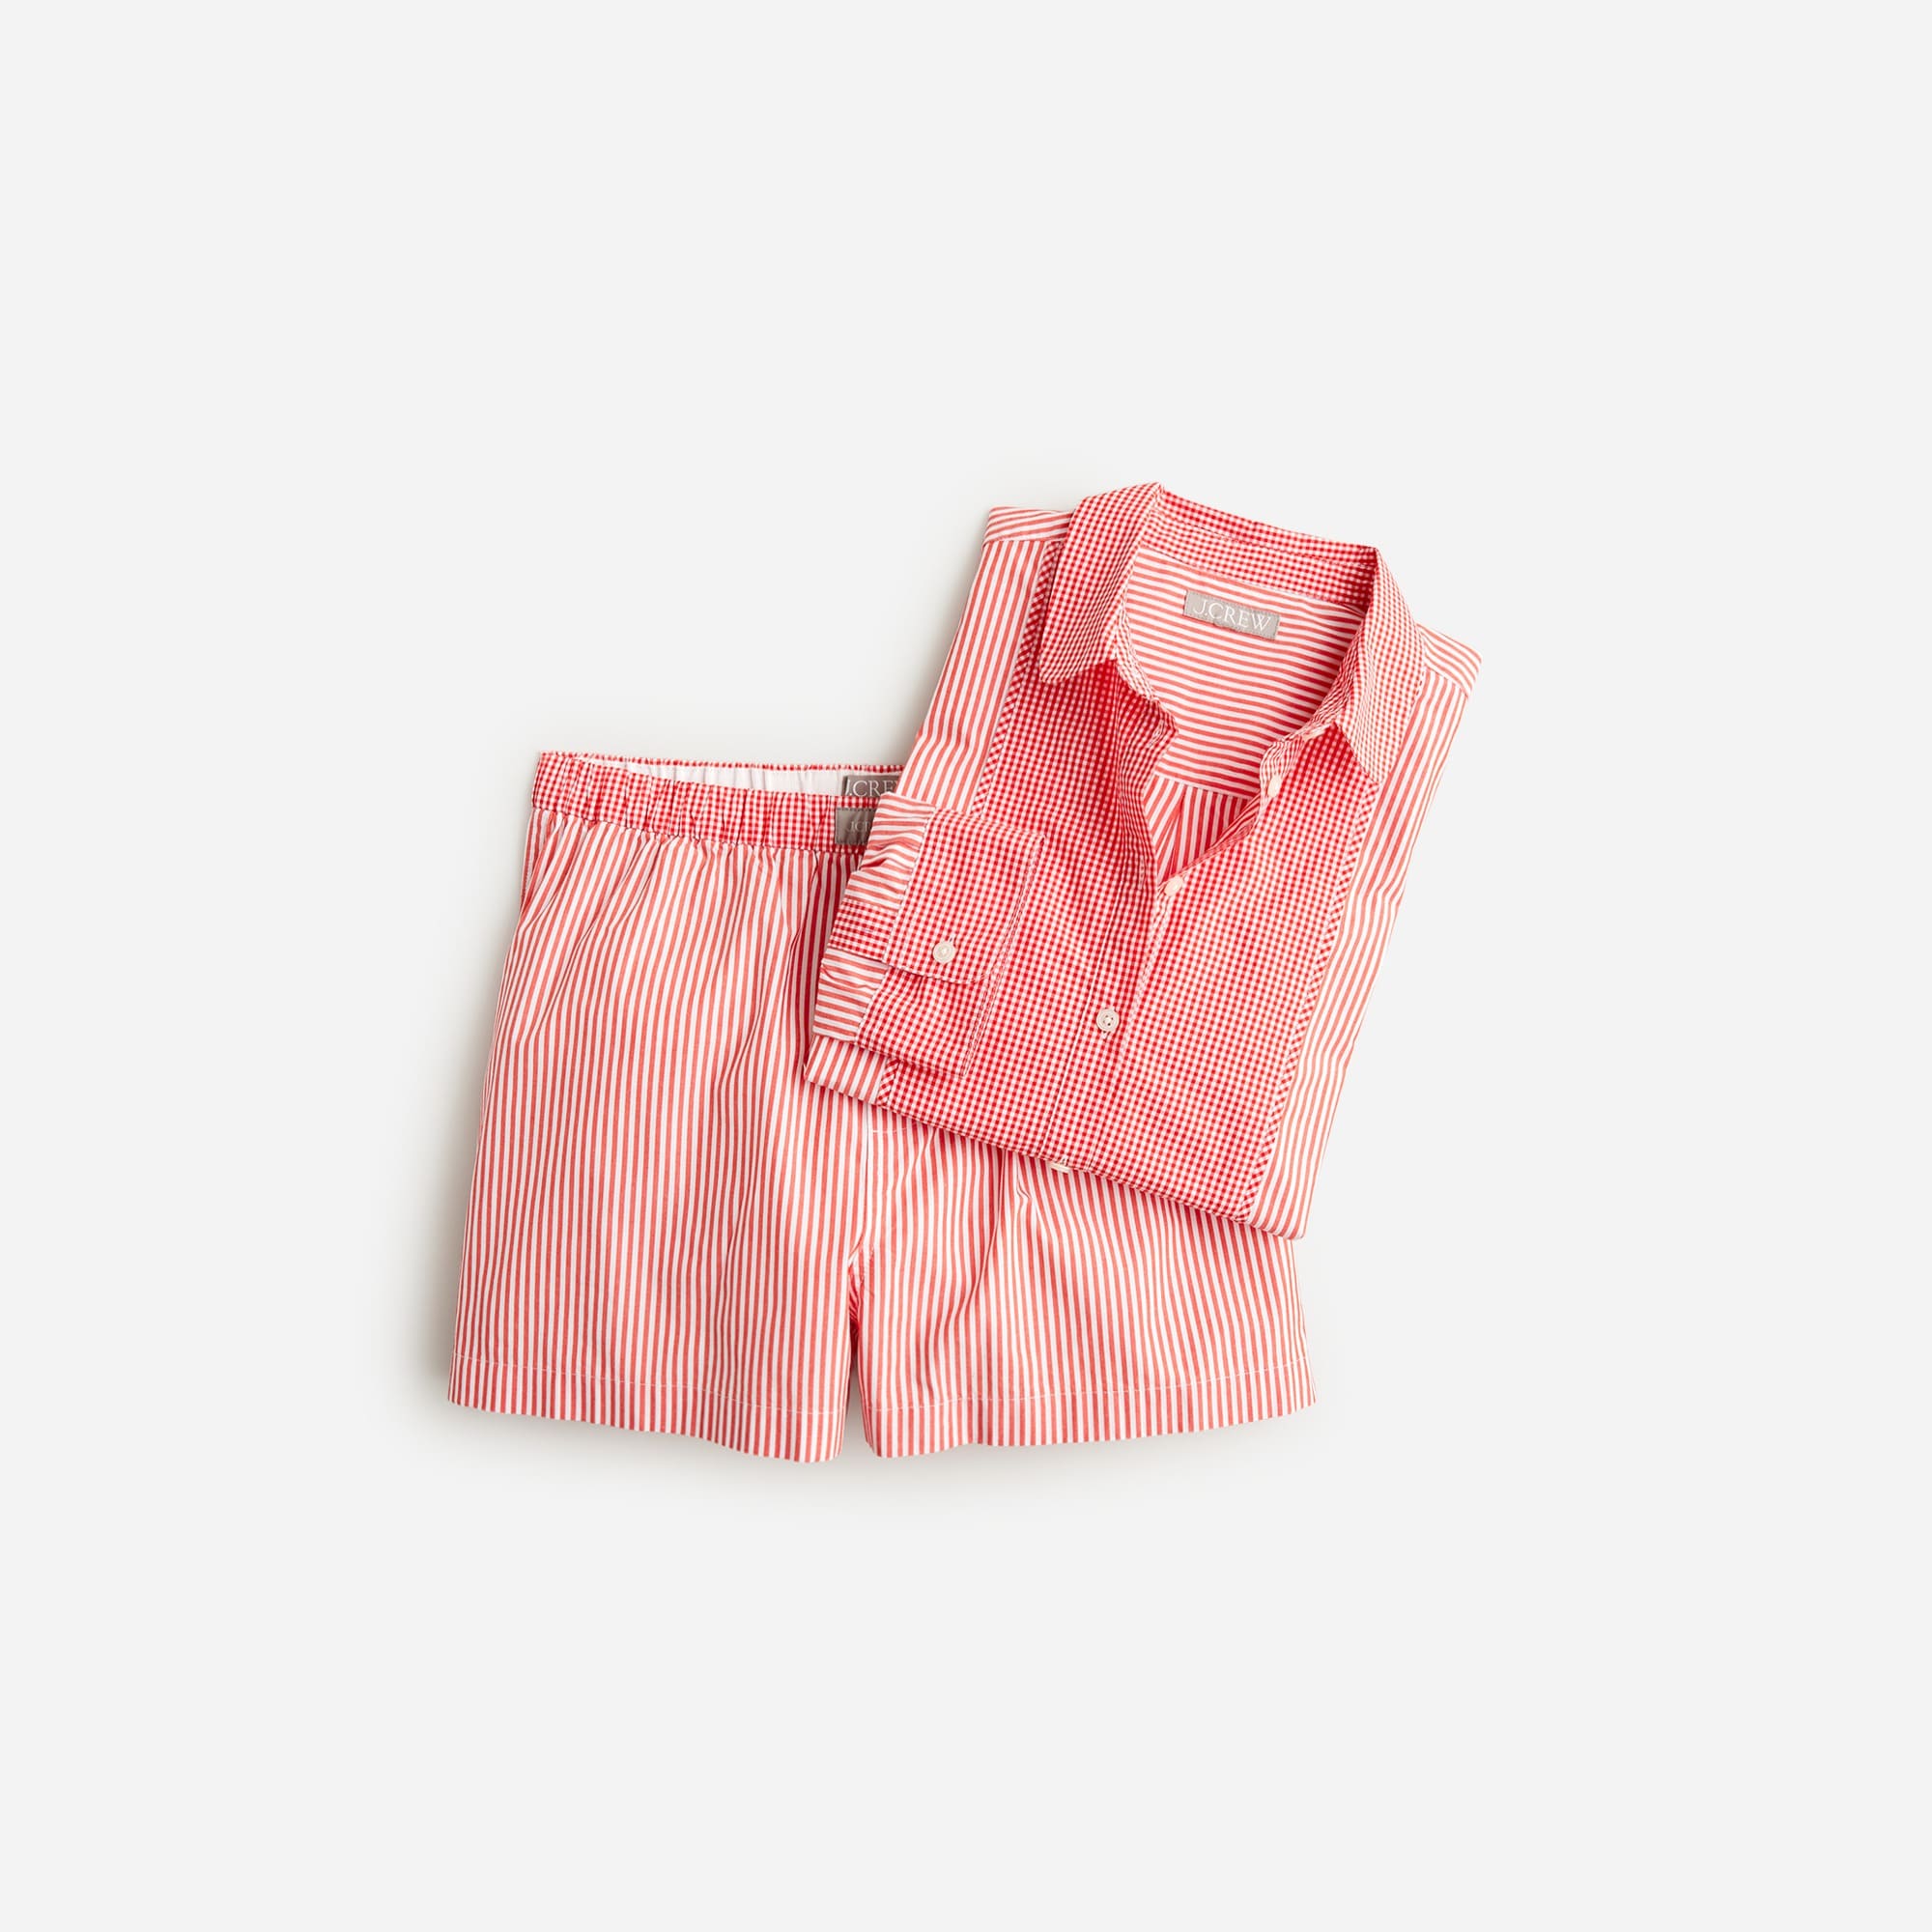  Cropped bib shirt and boxer short pajama set in cotton poplin